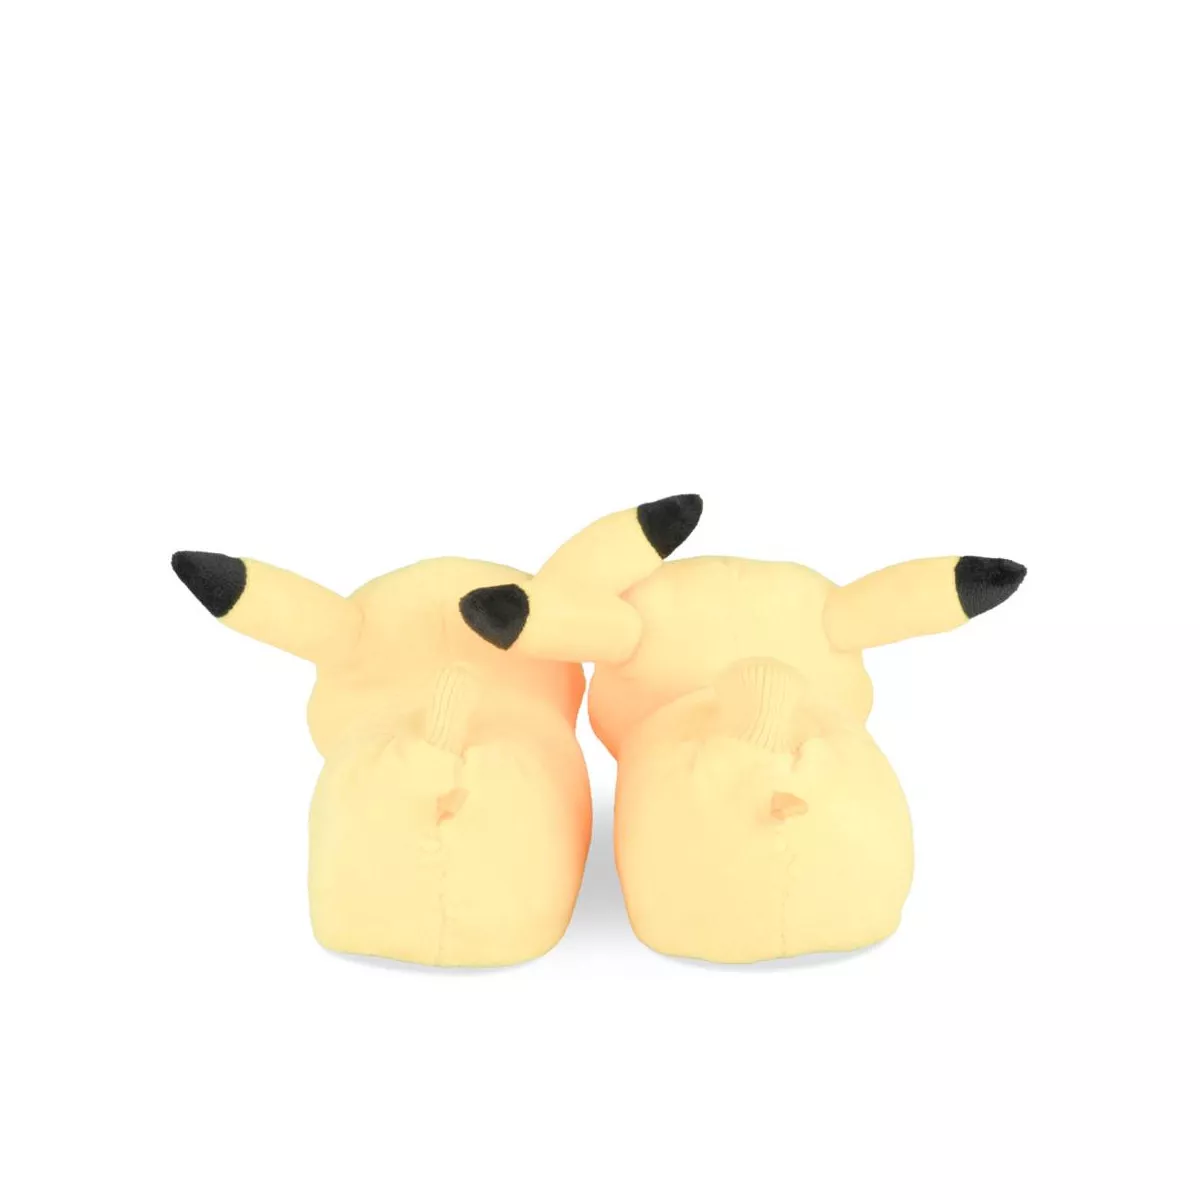 Pokémon Pikachu Tableau Photo, Livraison 2-3 jours